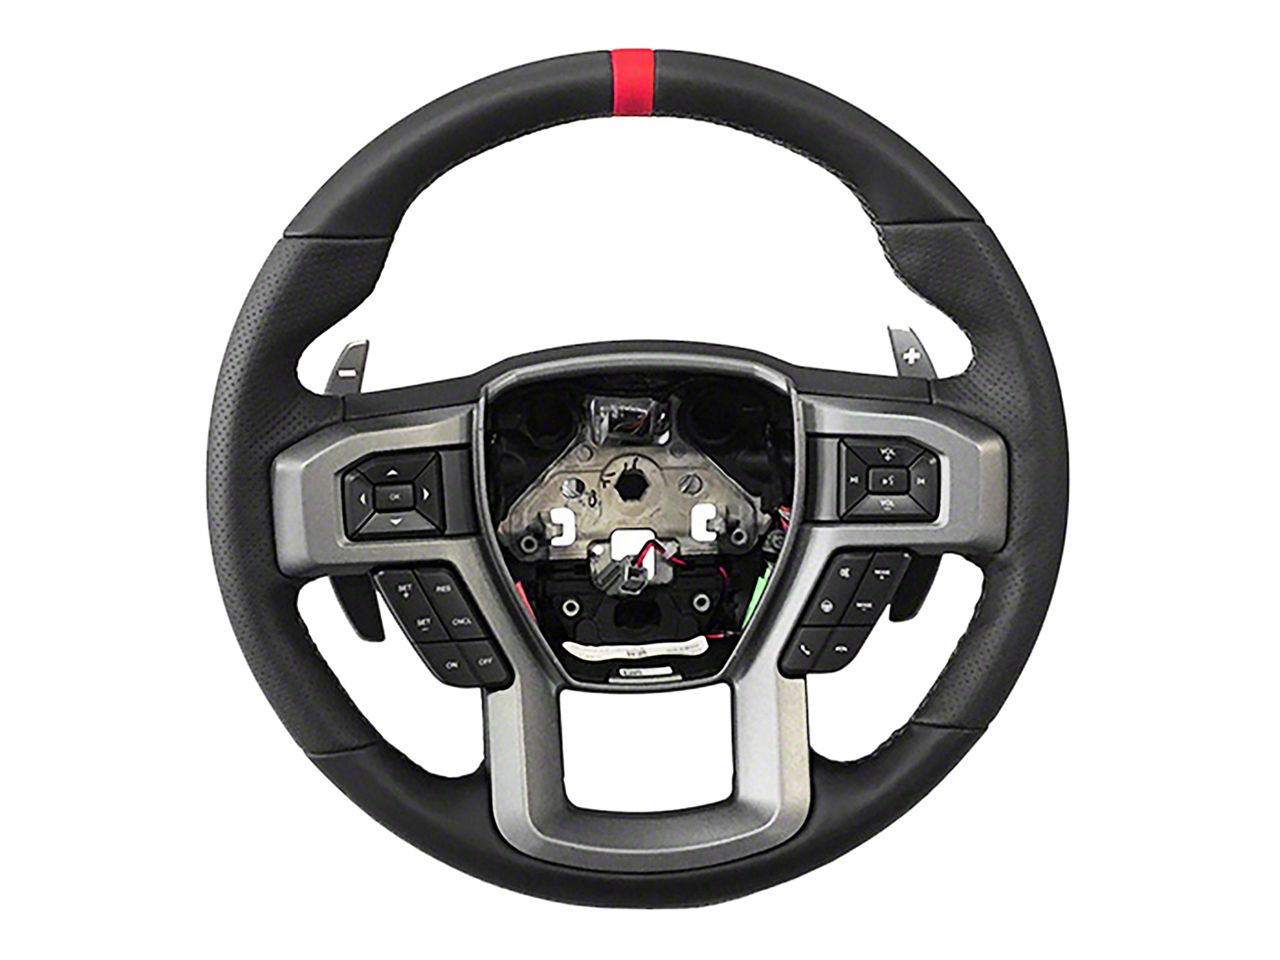 Ram3500 Steering Wheels & Accessories 2003-2009